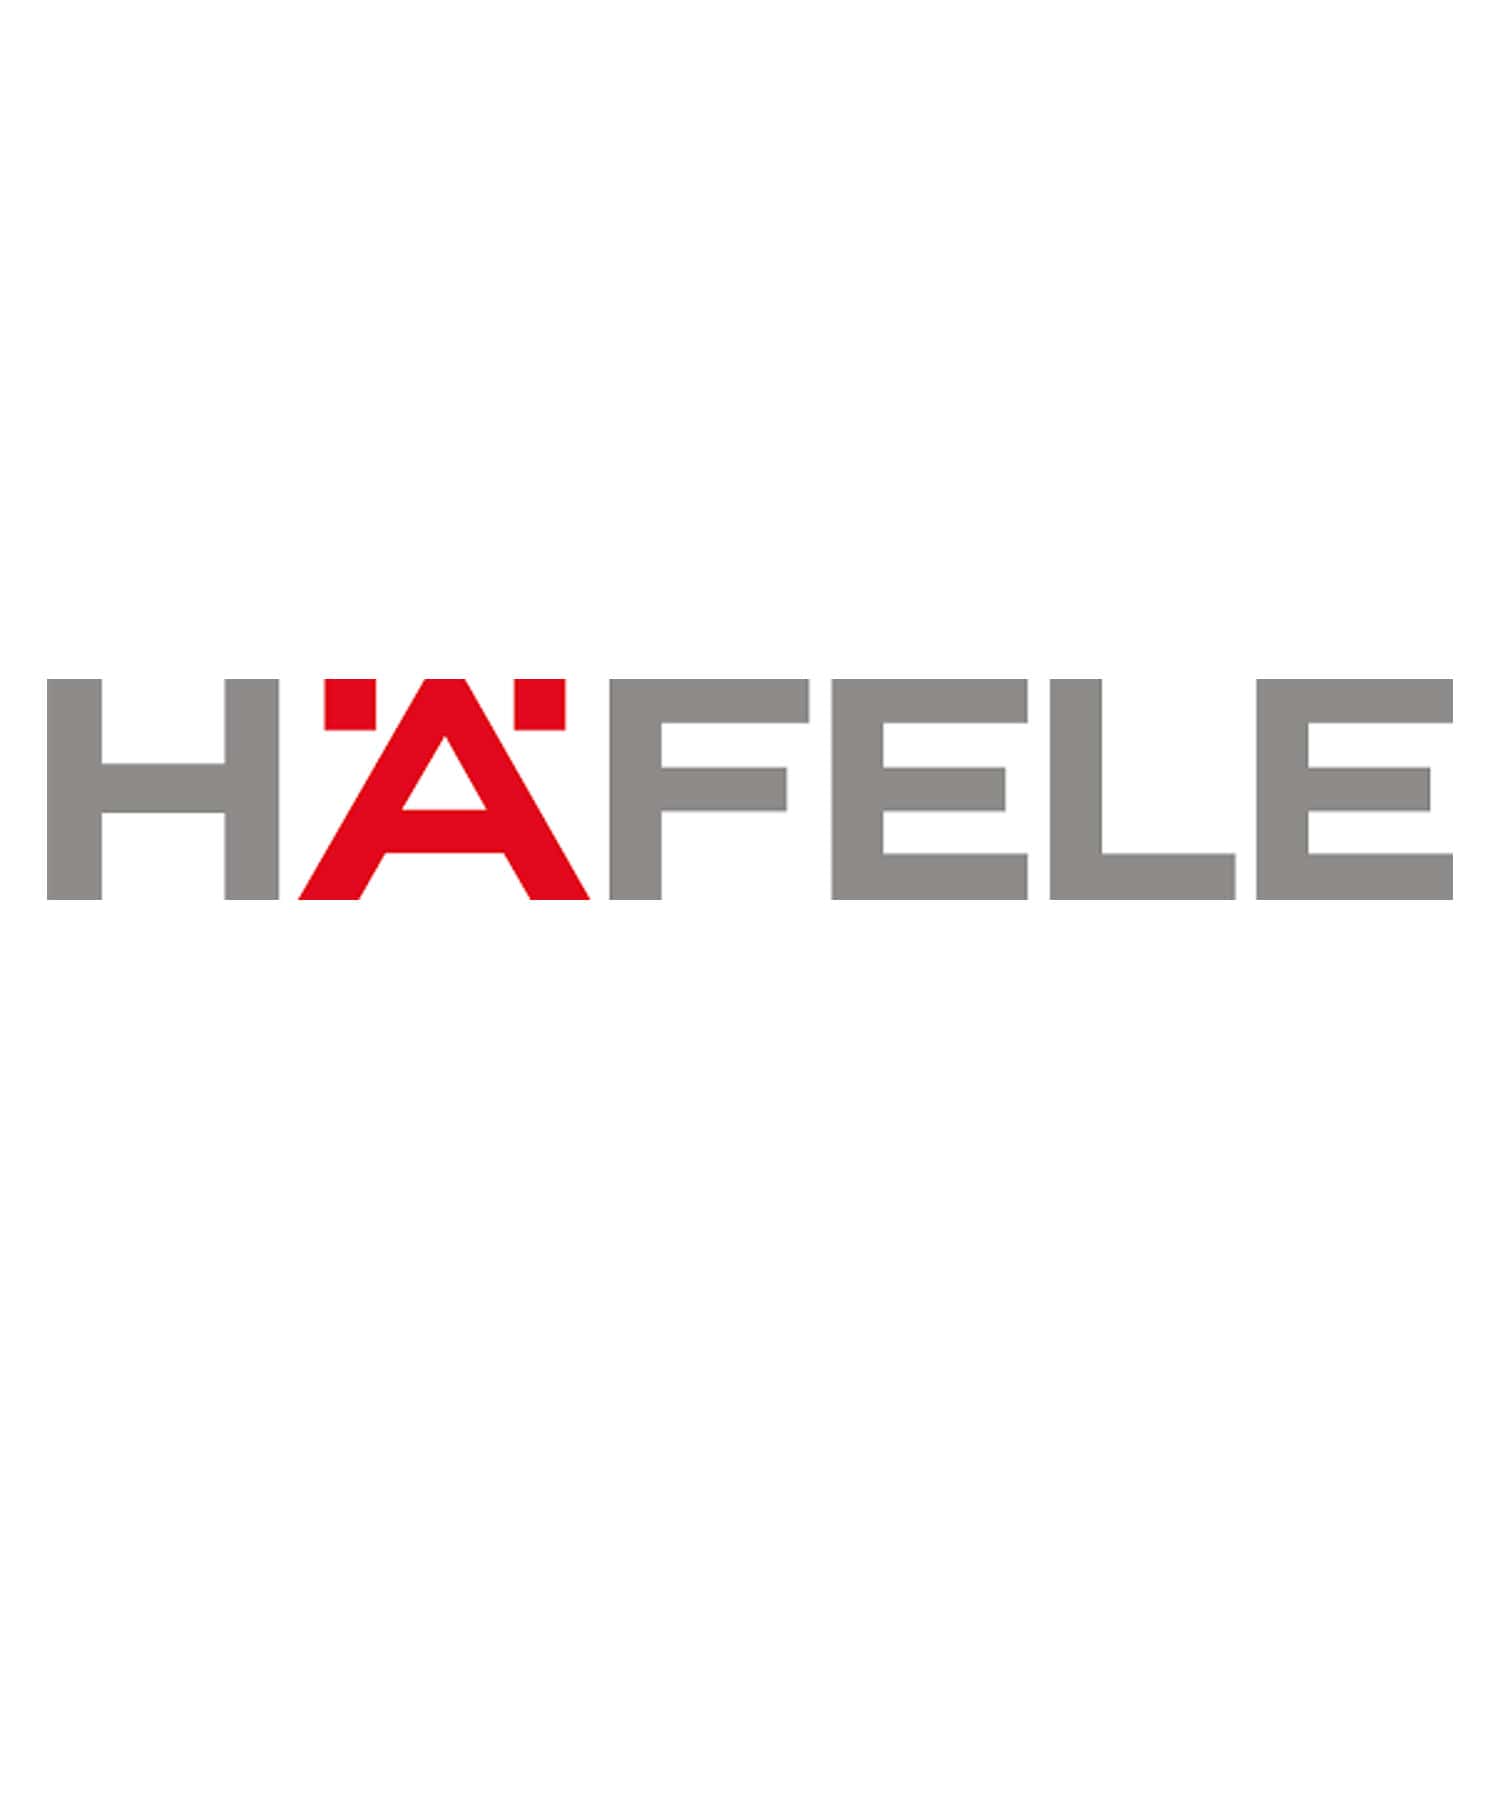 Hafele Logo & Transparent Hafele.PNG Logo Images